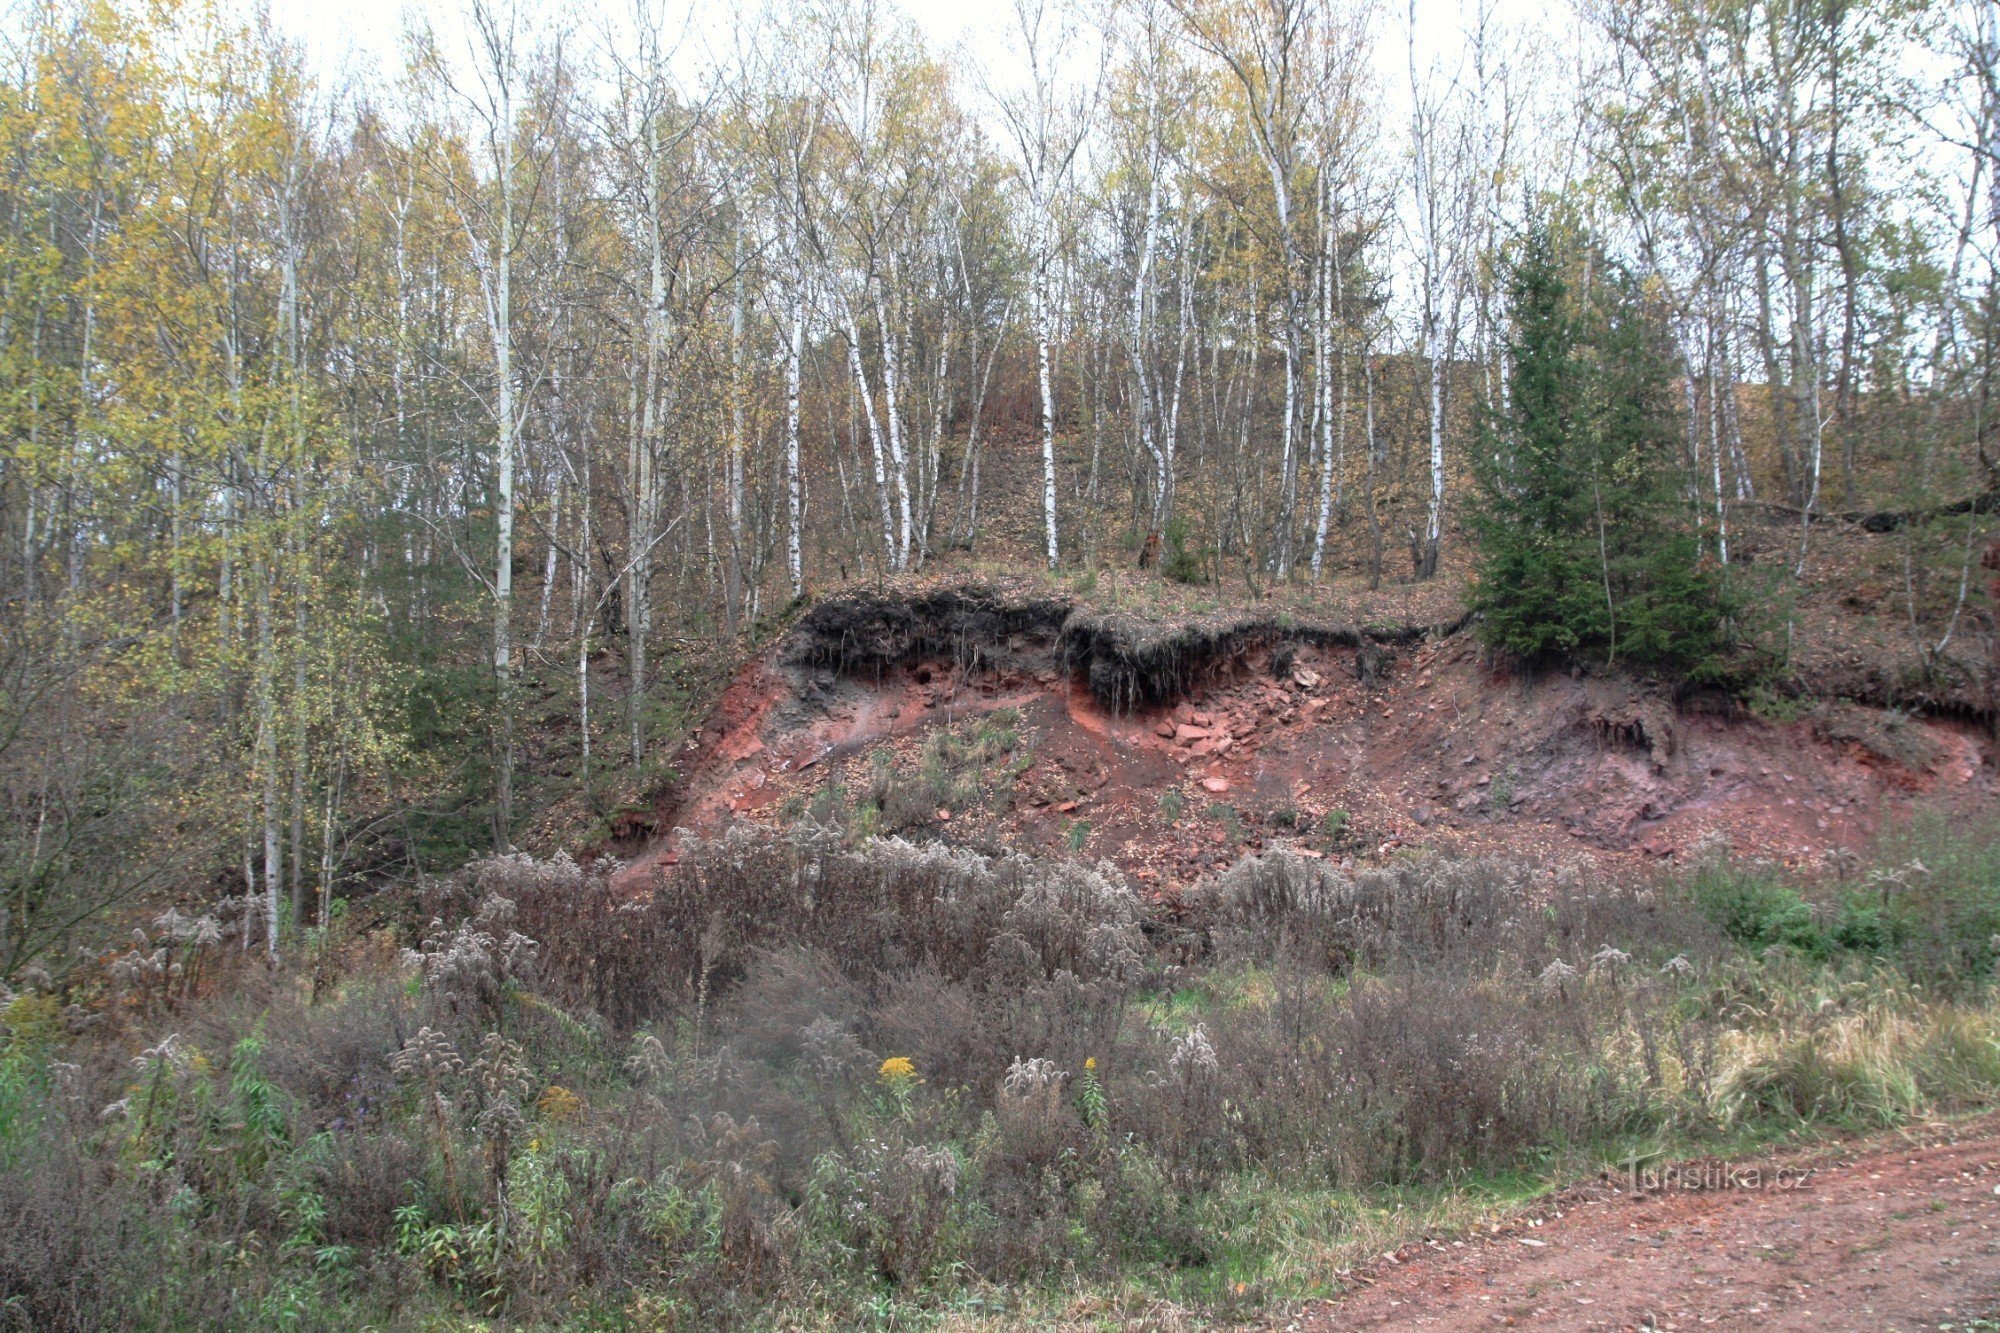 鉱山のそばに積み上げられた古い尾鉱